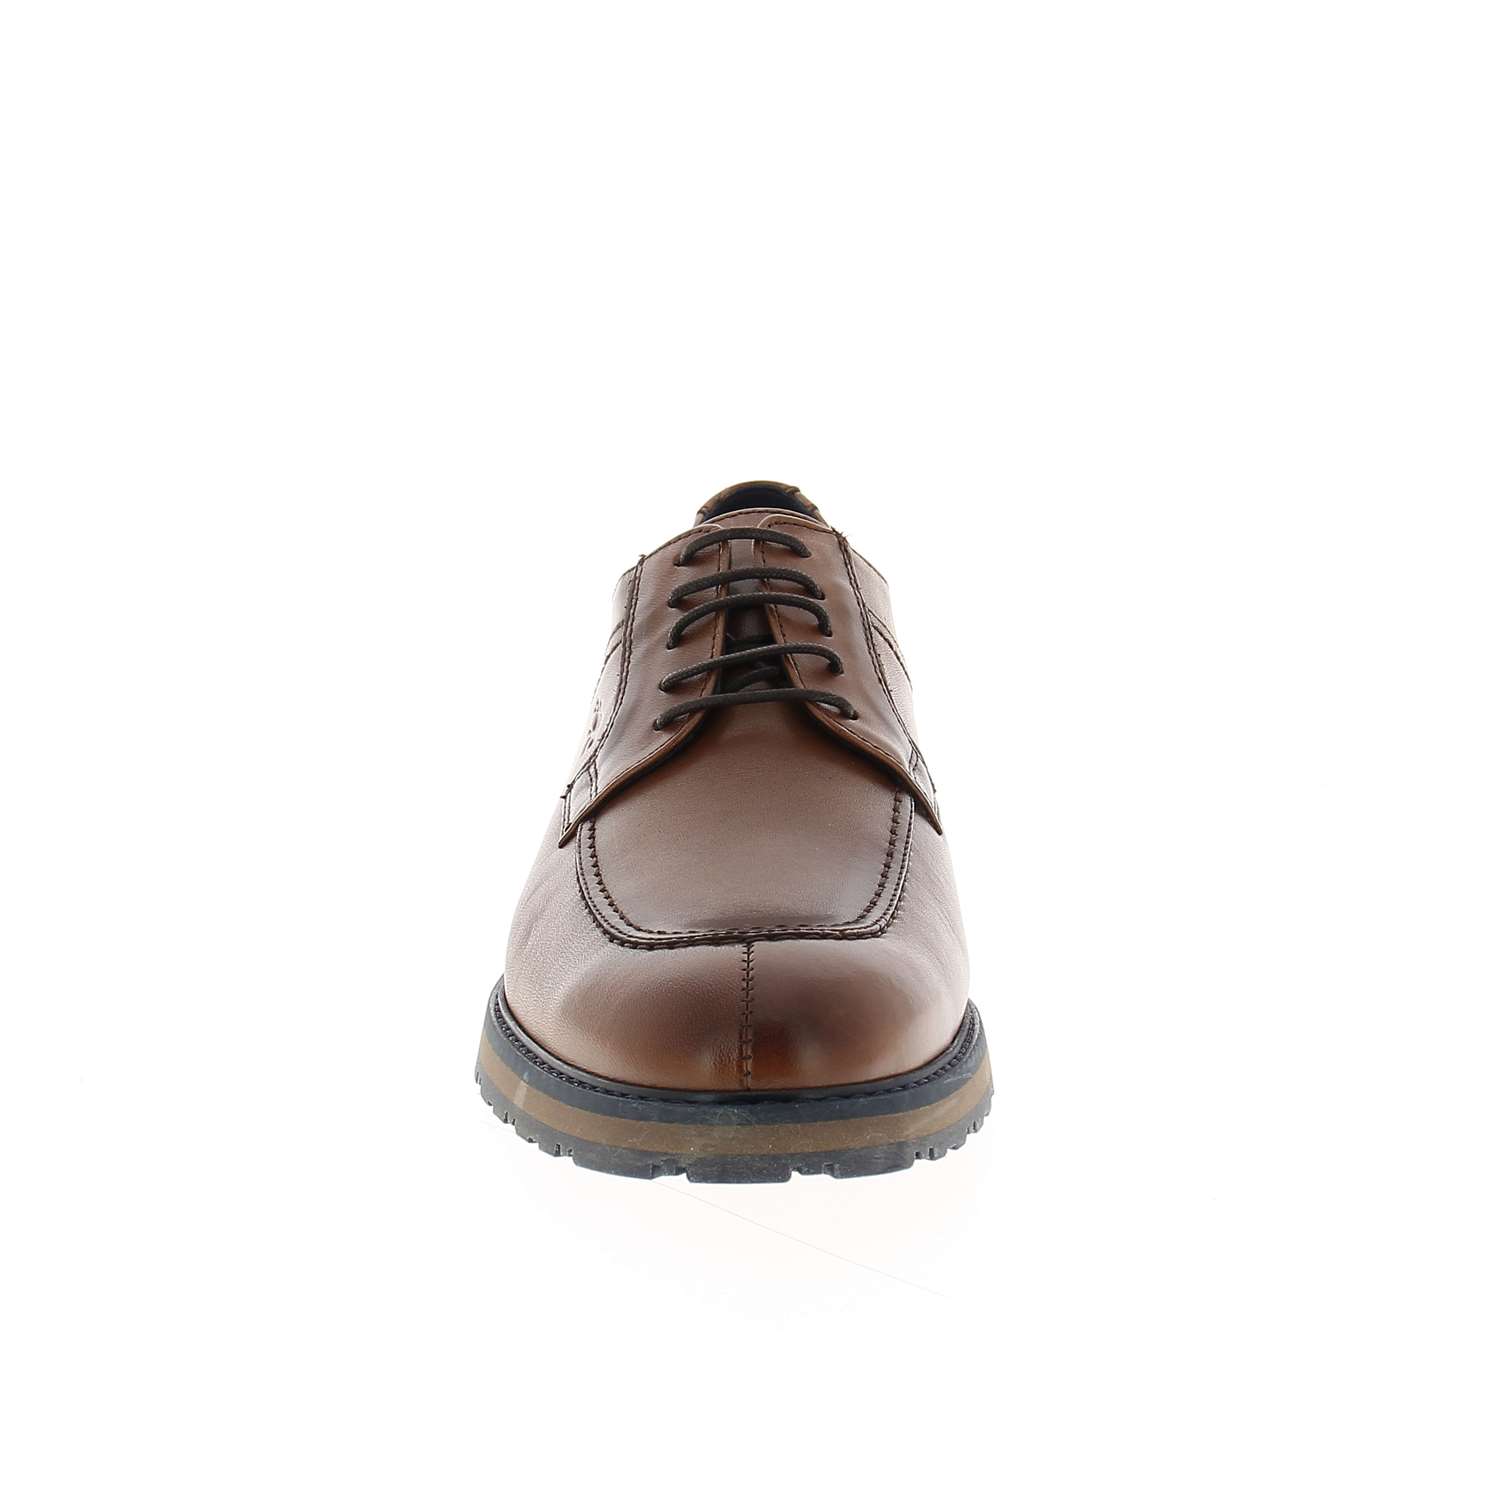 03 - ULRICH - FLUCHOS - Chaussures à lacets - Cuir